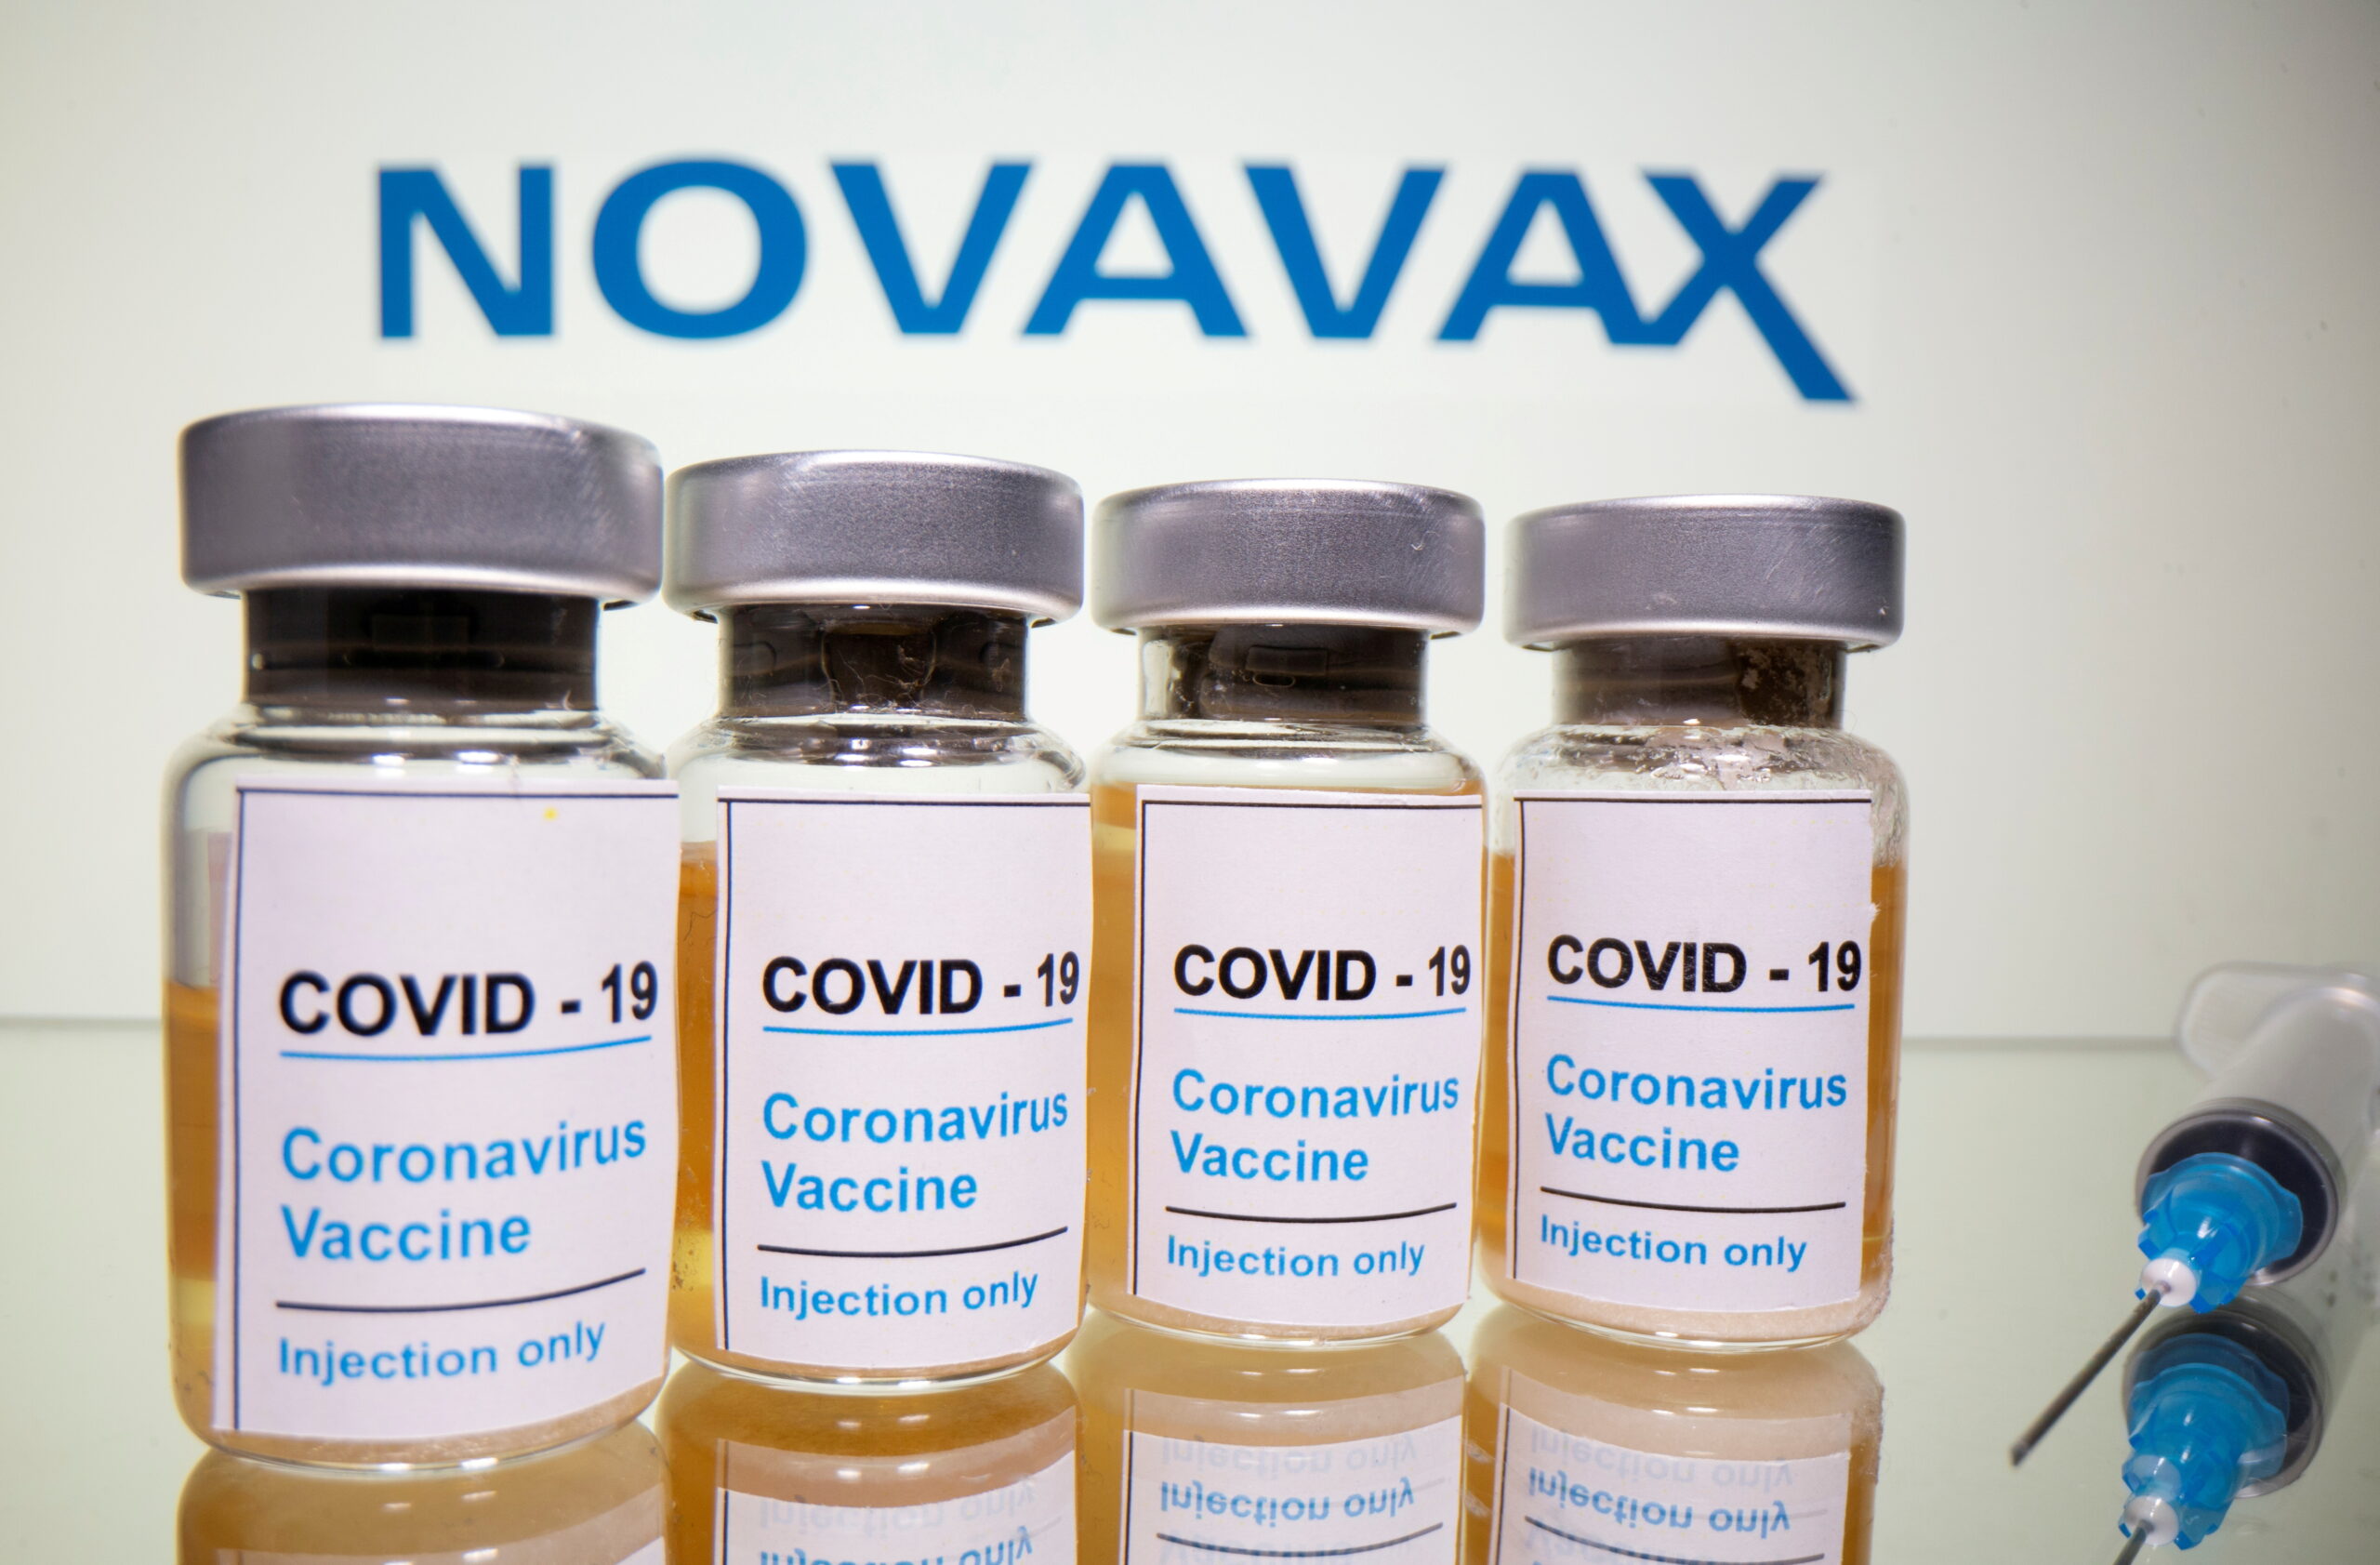 โนวาแวกซ์-สถาบันเซรุ่มแห่งอินเดีย ขอ WHO อนุมัติใช้วัคซีนกรณีฉุกเฉิน – ต่างประเทศ